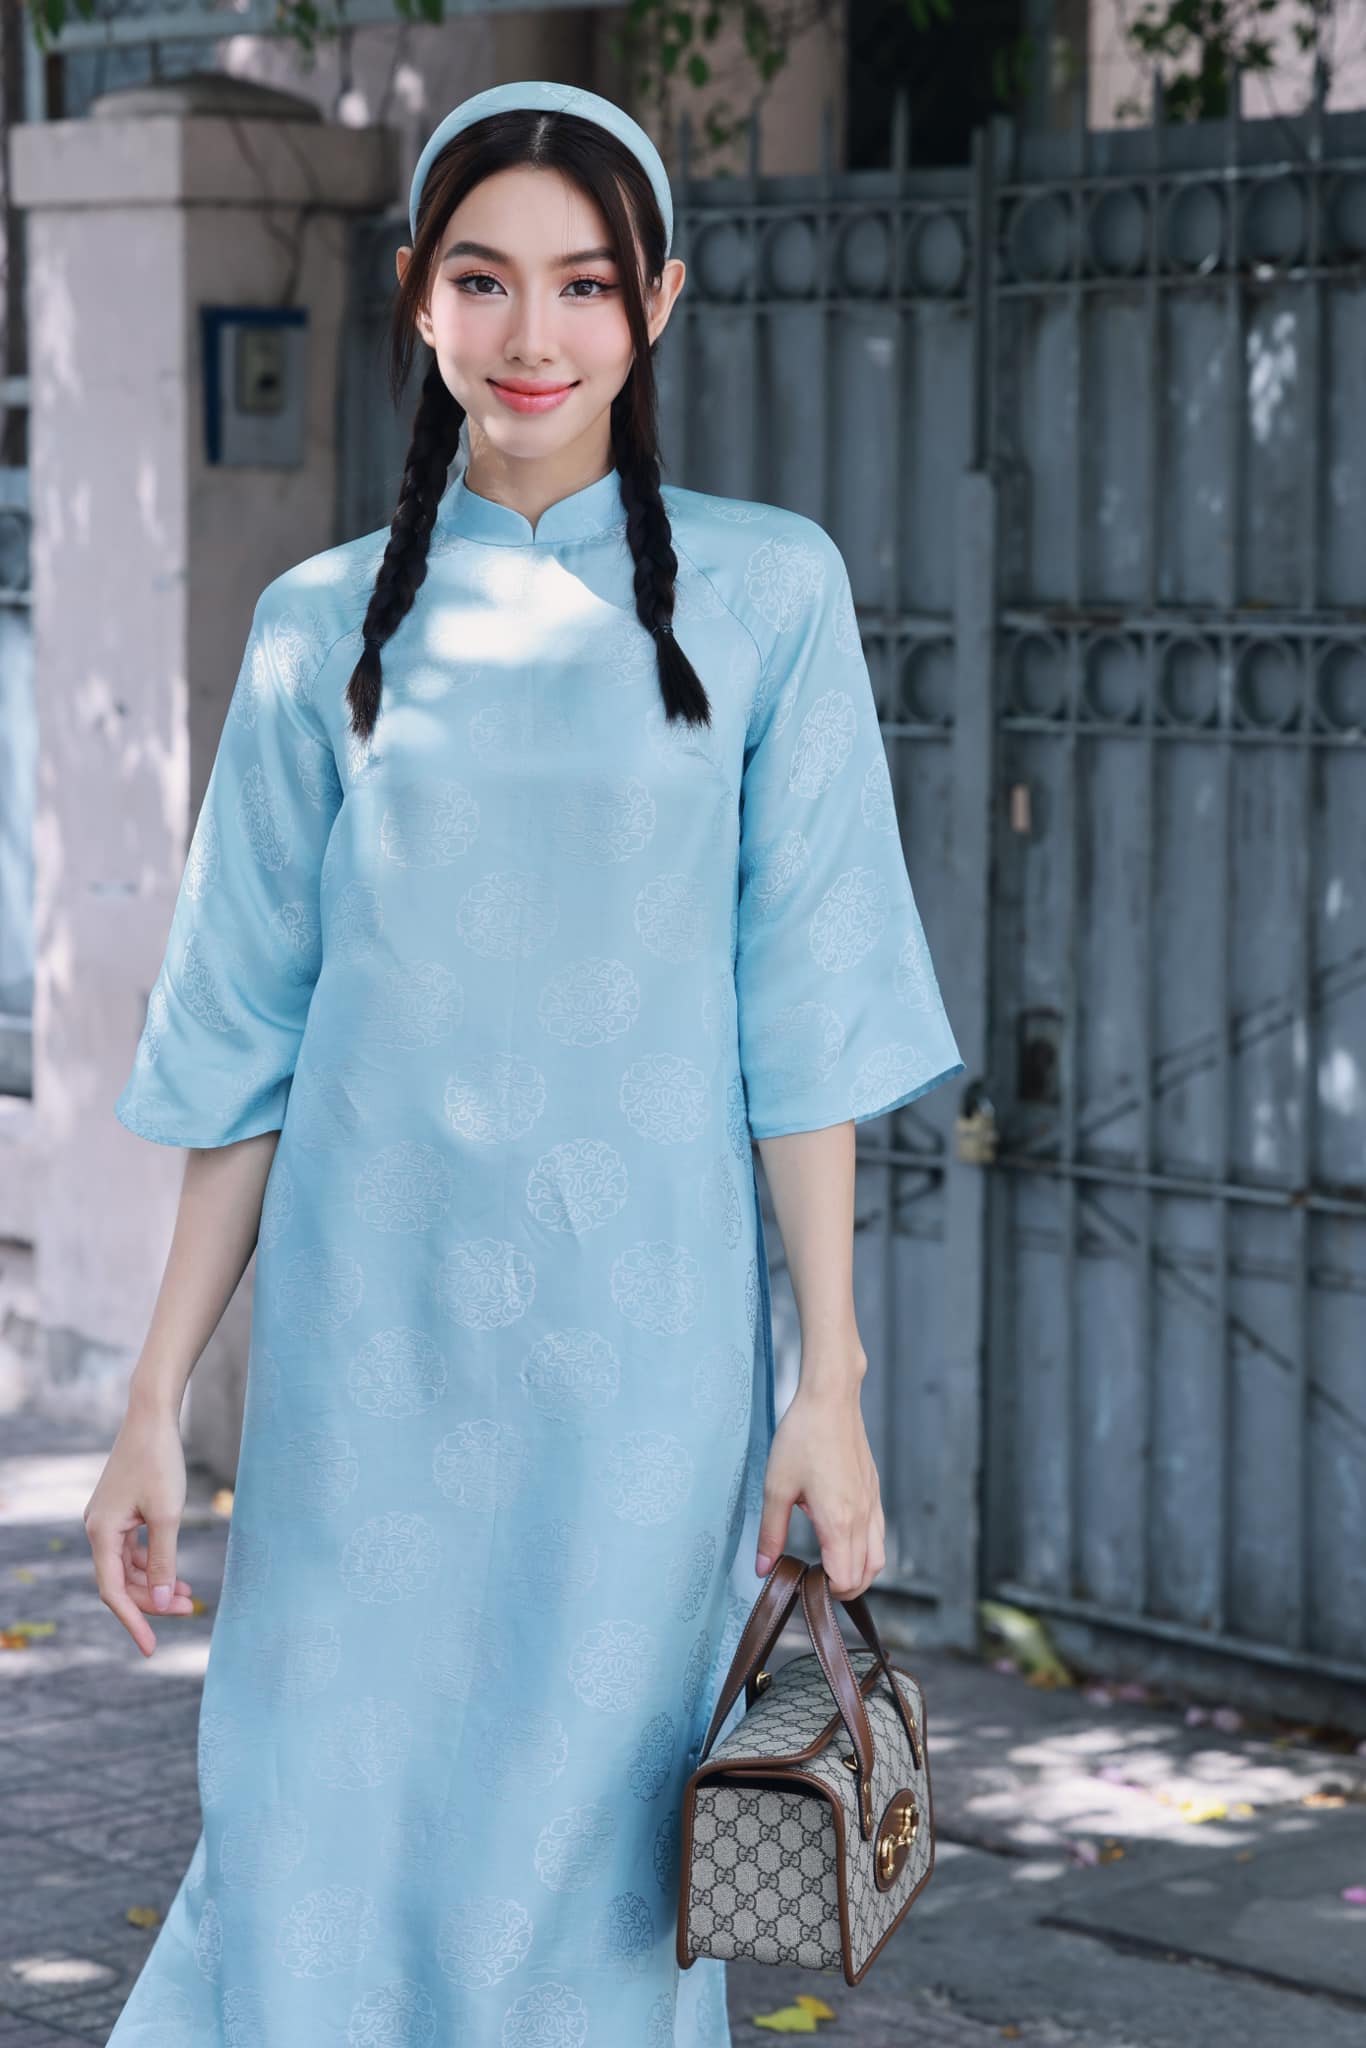 Mê mệt loạt áo dài Tết của Hoa hậu Thủy Tiên: toàn đồ local brand quen mặt, thiết kế điệu đà cứ diện là xinh - Ảnh 1.